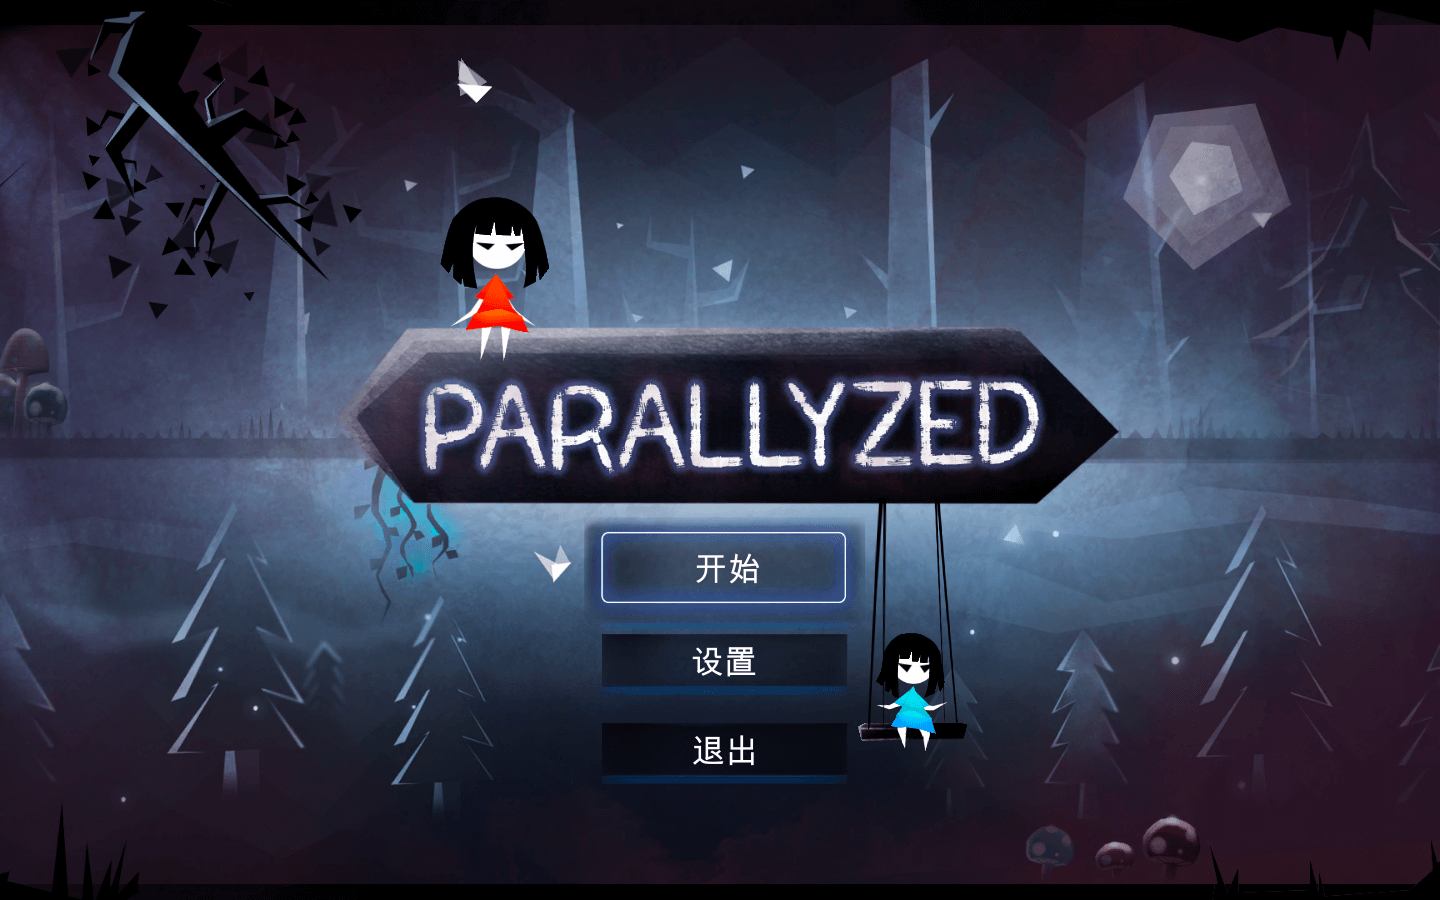 平行梦境 for Mac Parallyzed v1.0 中文原生版 苹果电脑